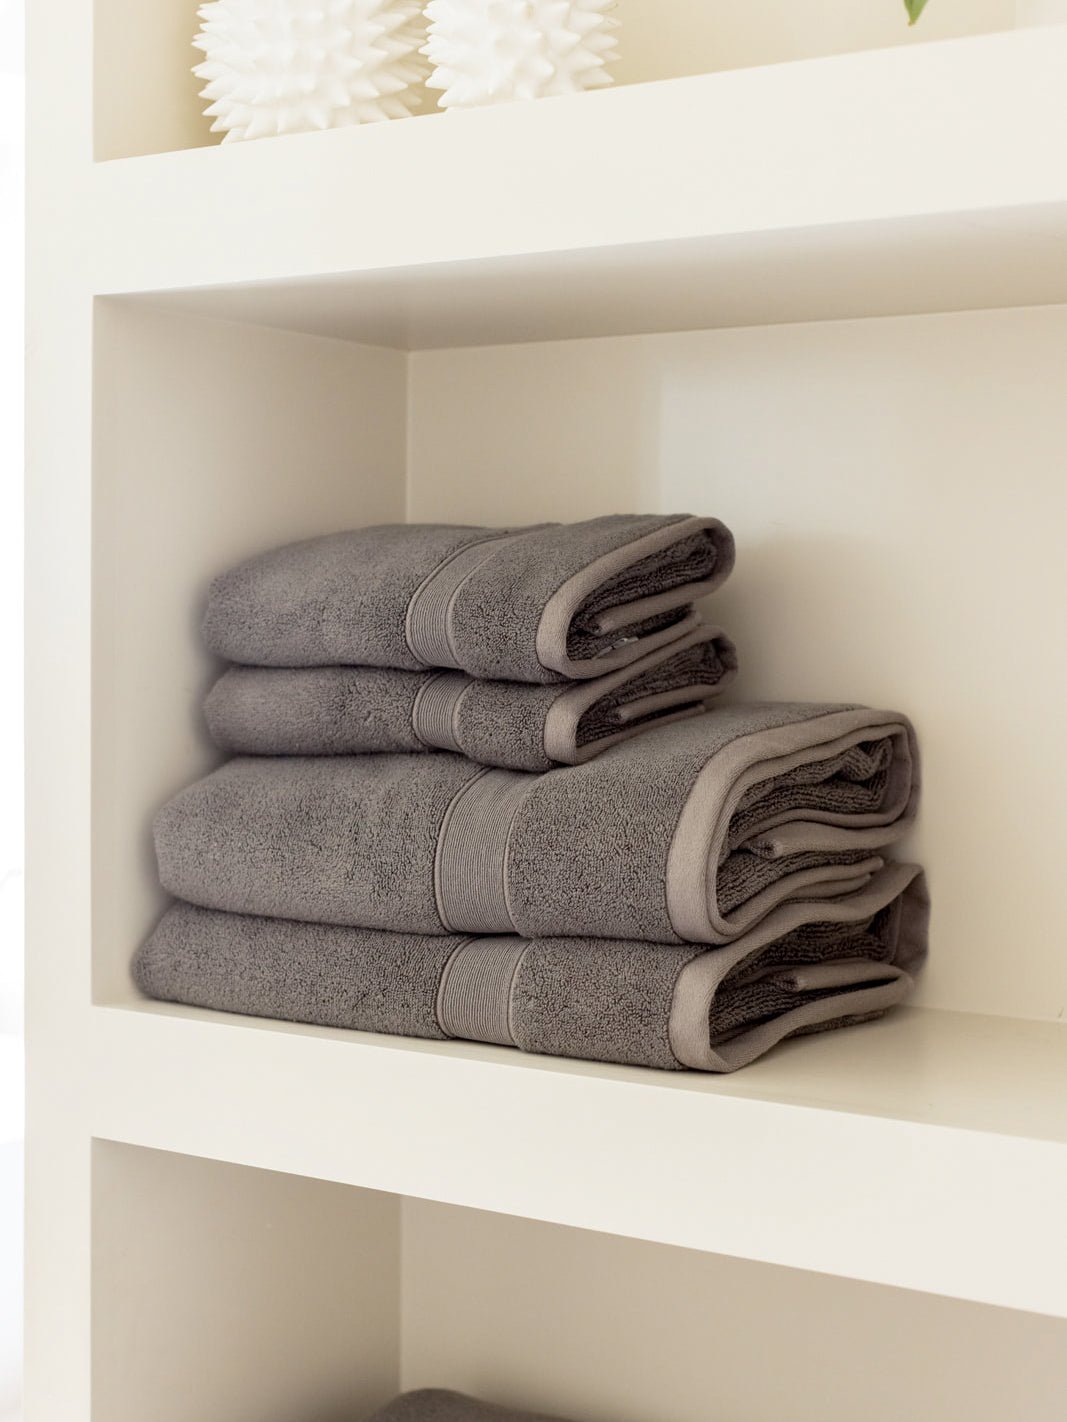 Charcoal hand and bath towels folded on shelf 